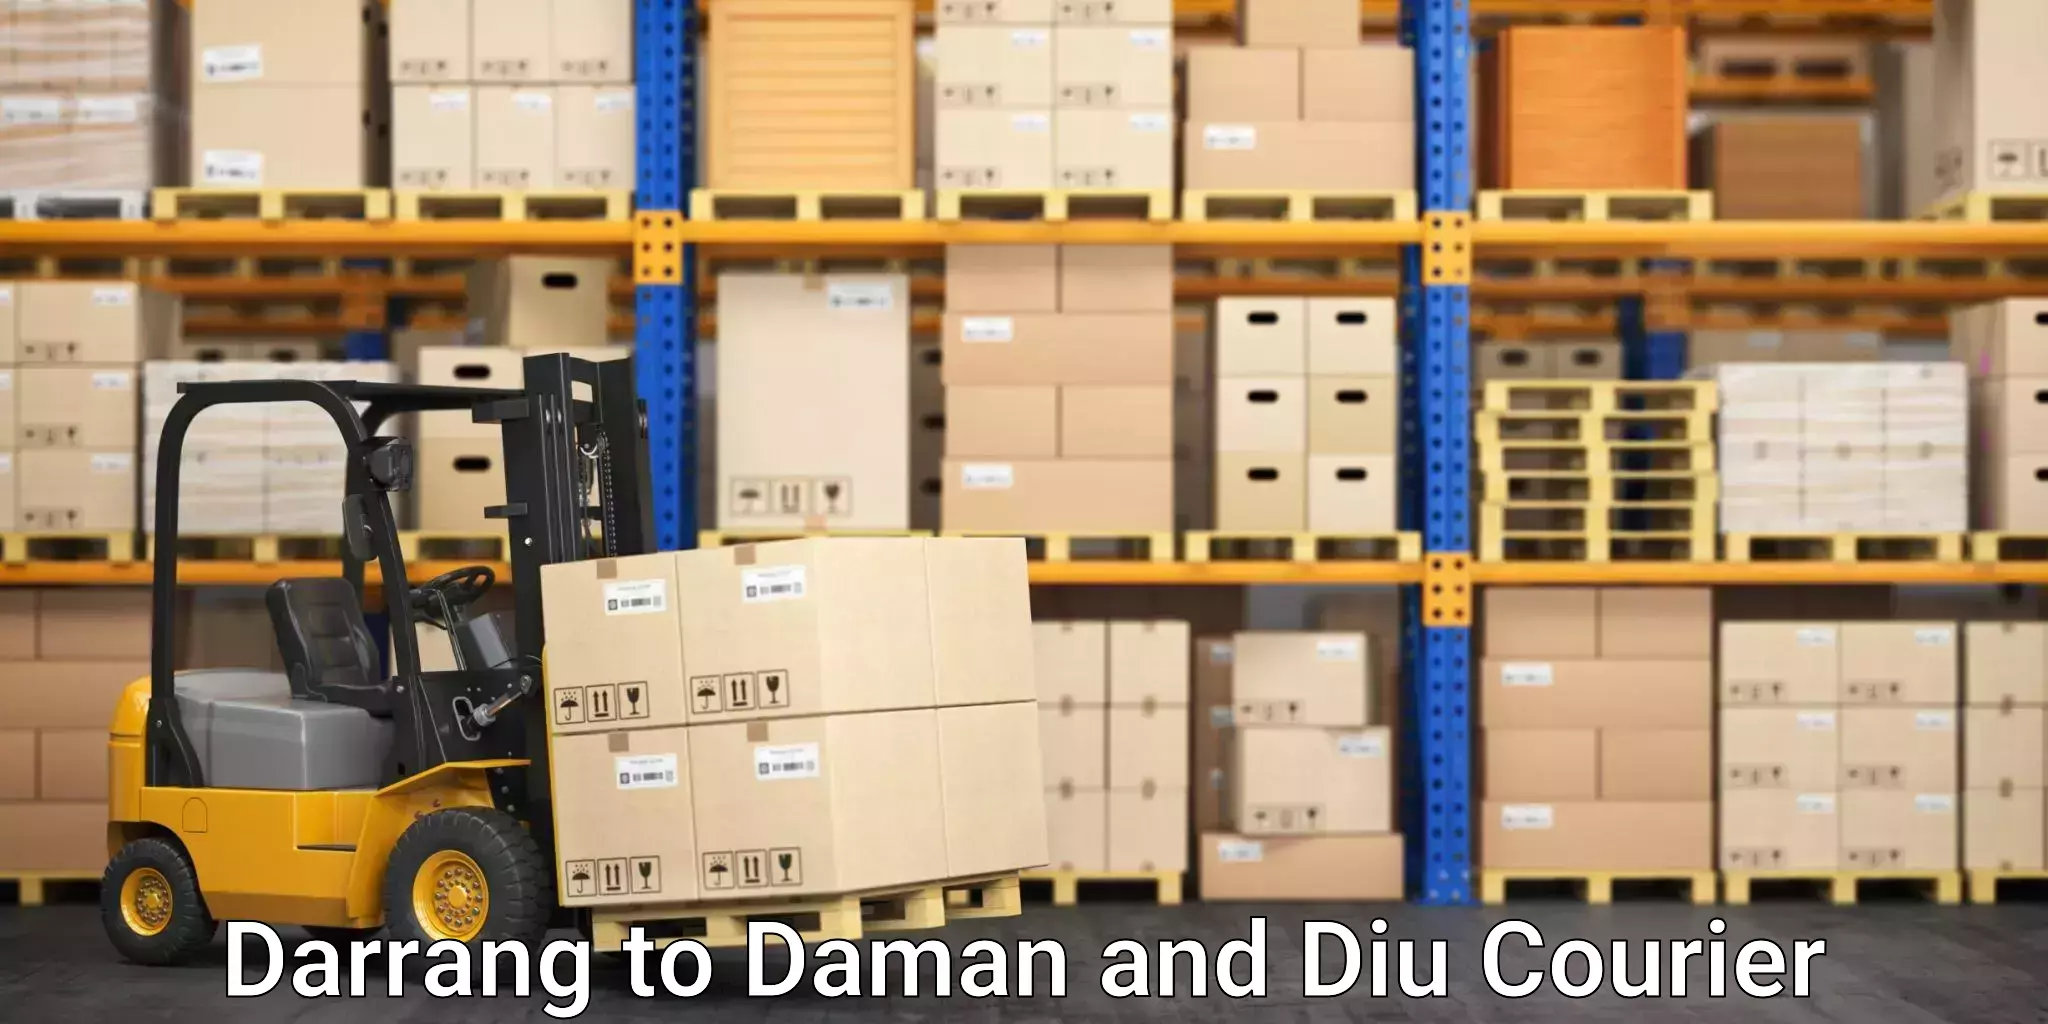 Ocean freight courier Darrang to Diu